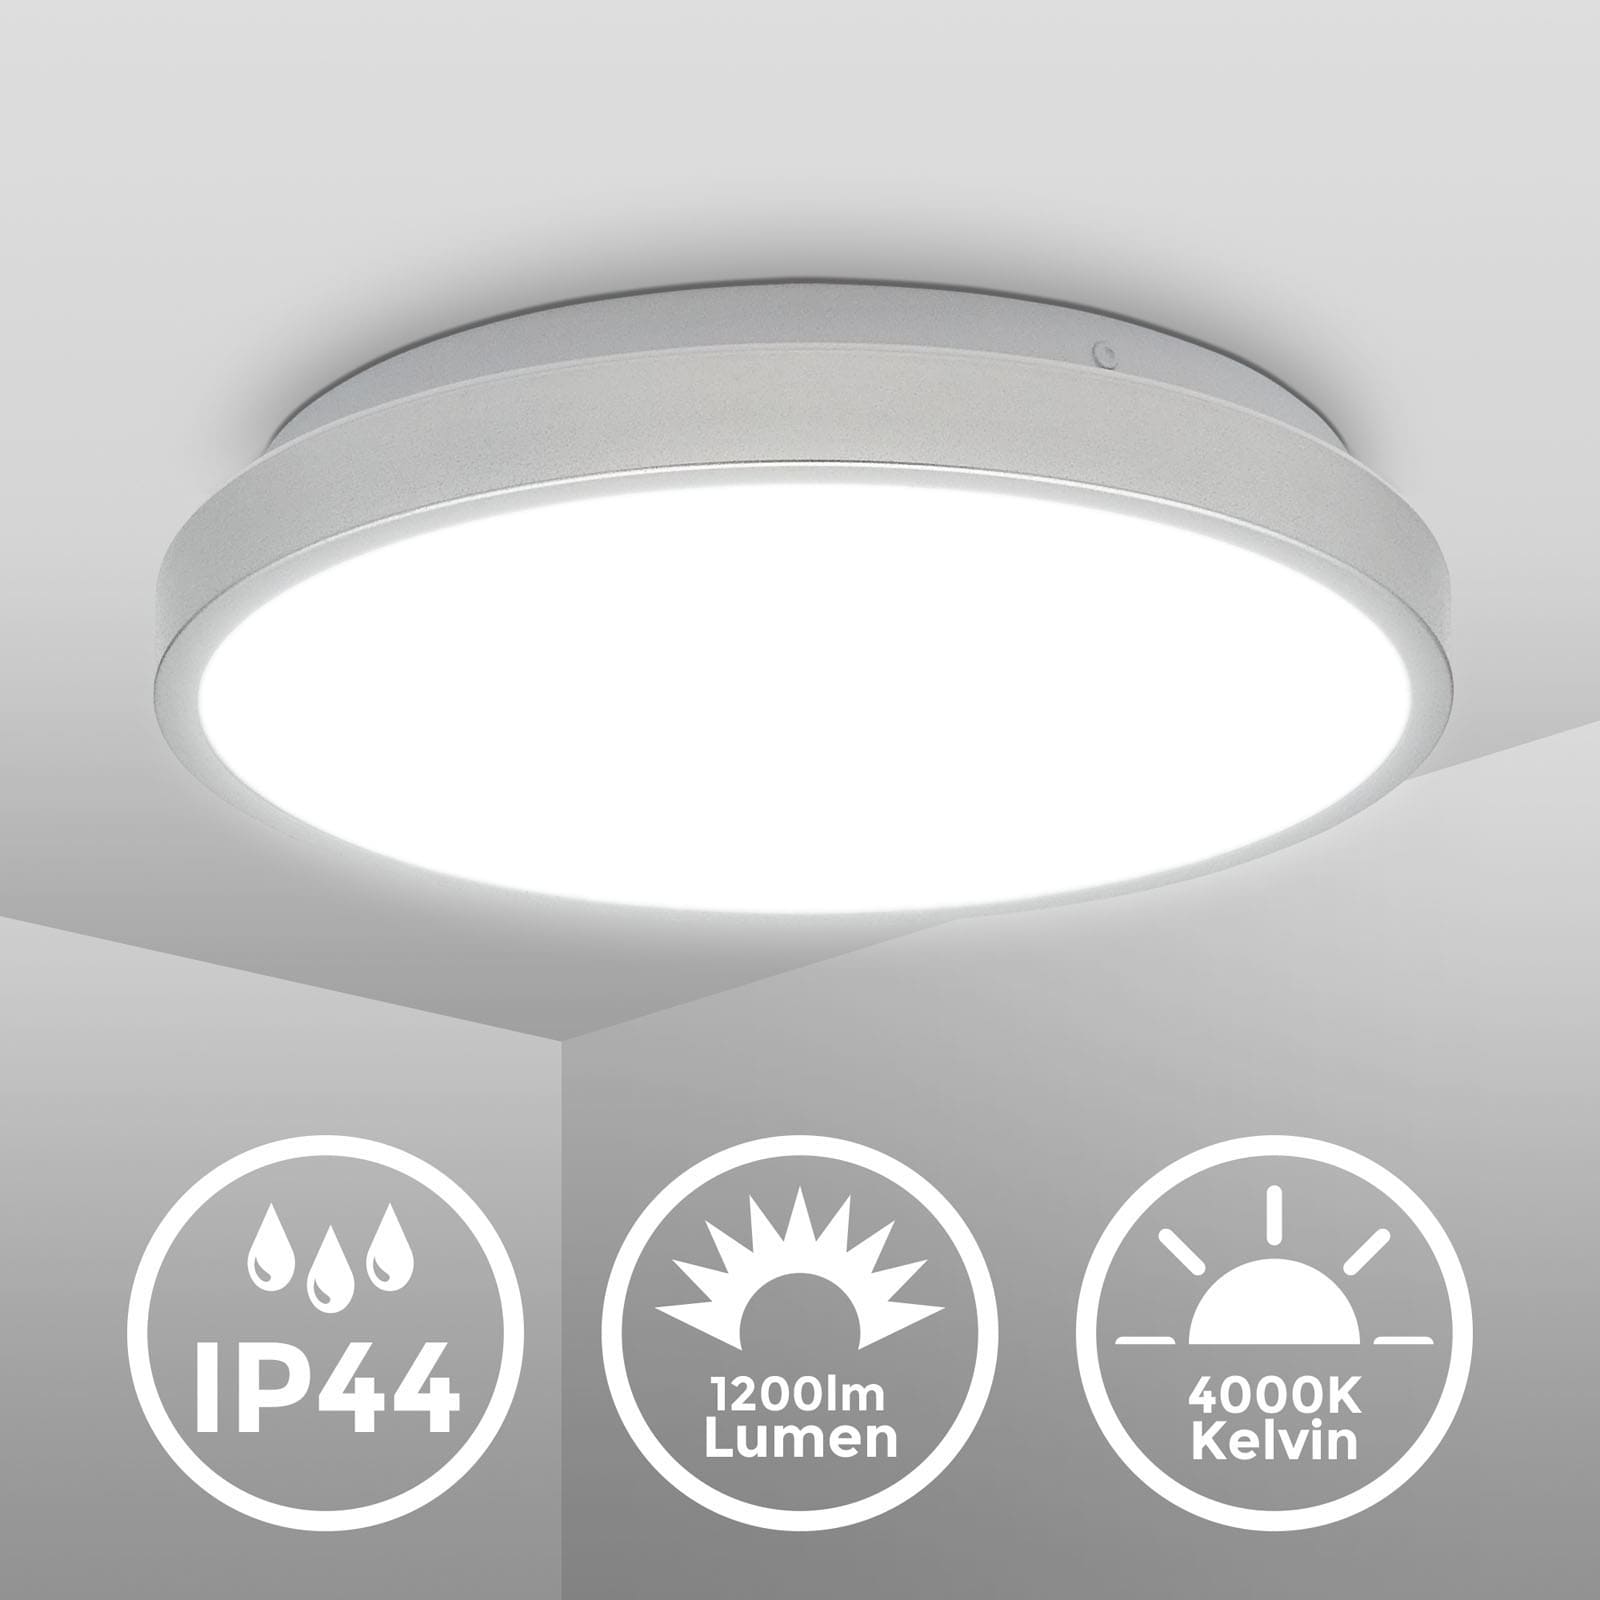 LED Deckenleuchte Badlampe IP44 weiß-silber - 3